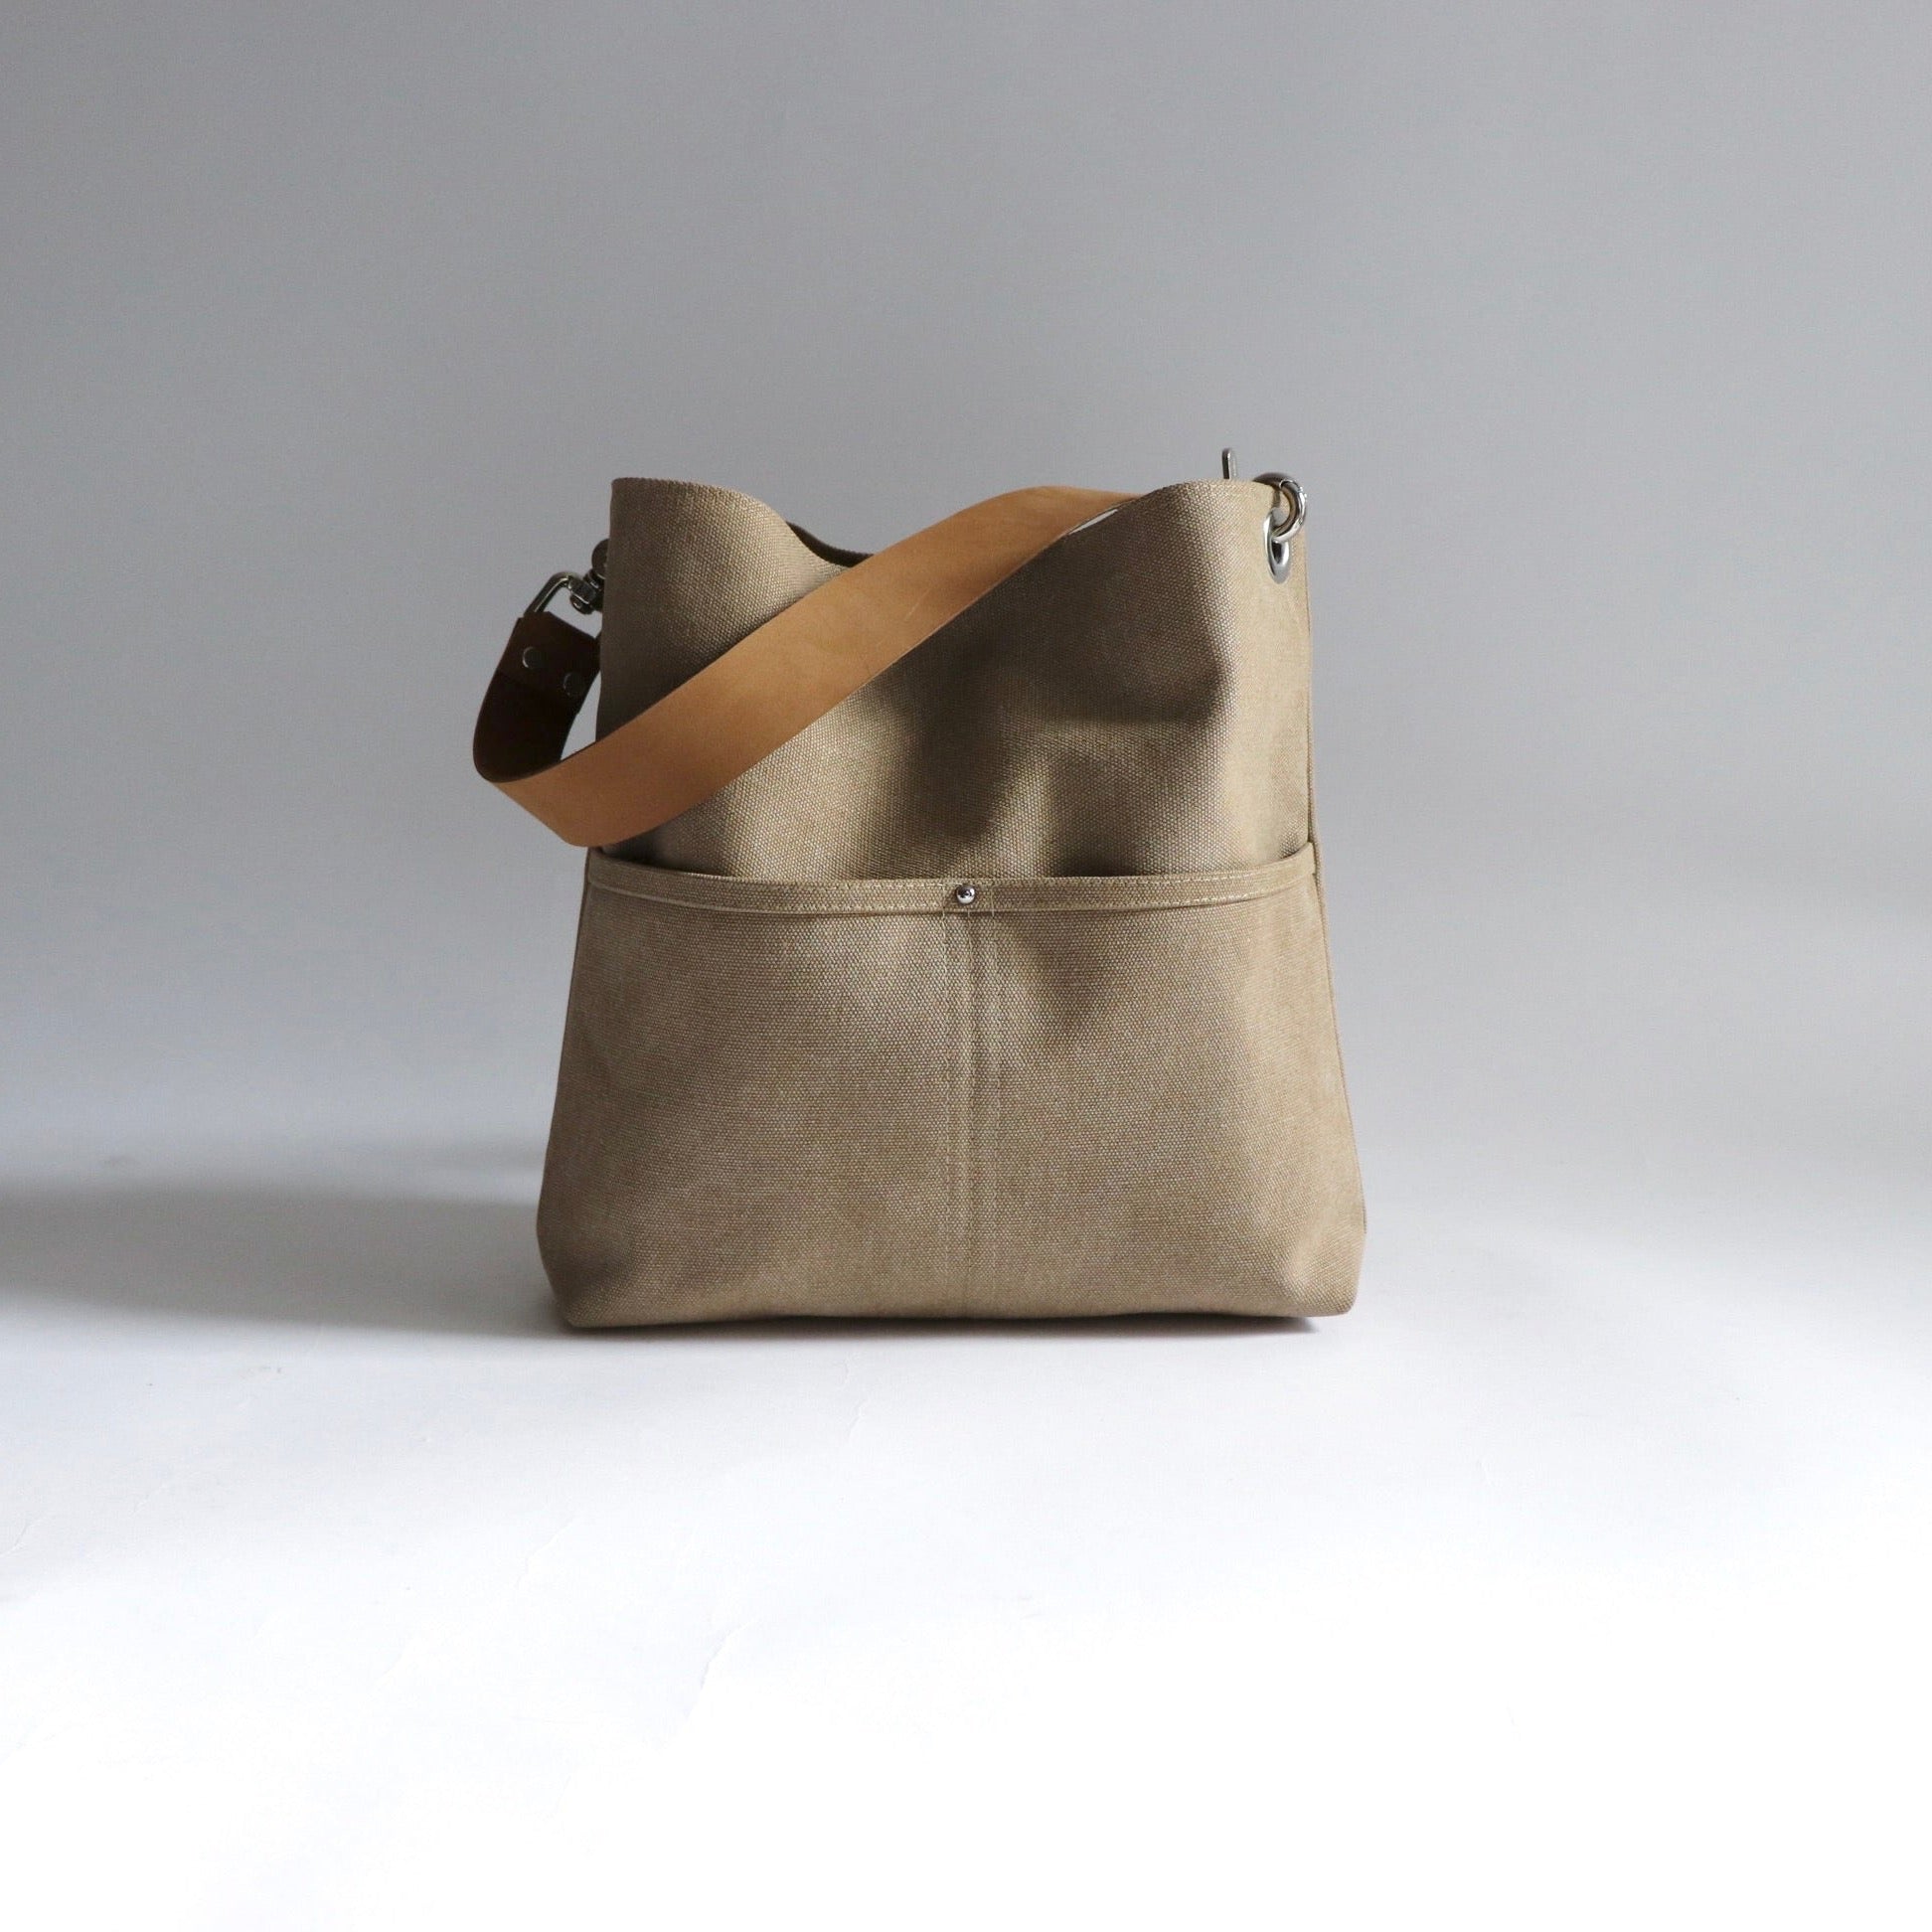 Buy buzhi Women Canvas Shoulder Bag Handbag Multi-Pockets Vintage Totes Hobo  Bags at Amazon.in